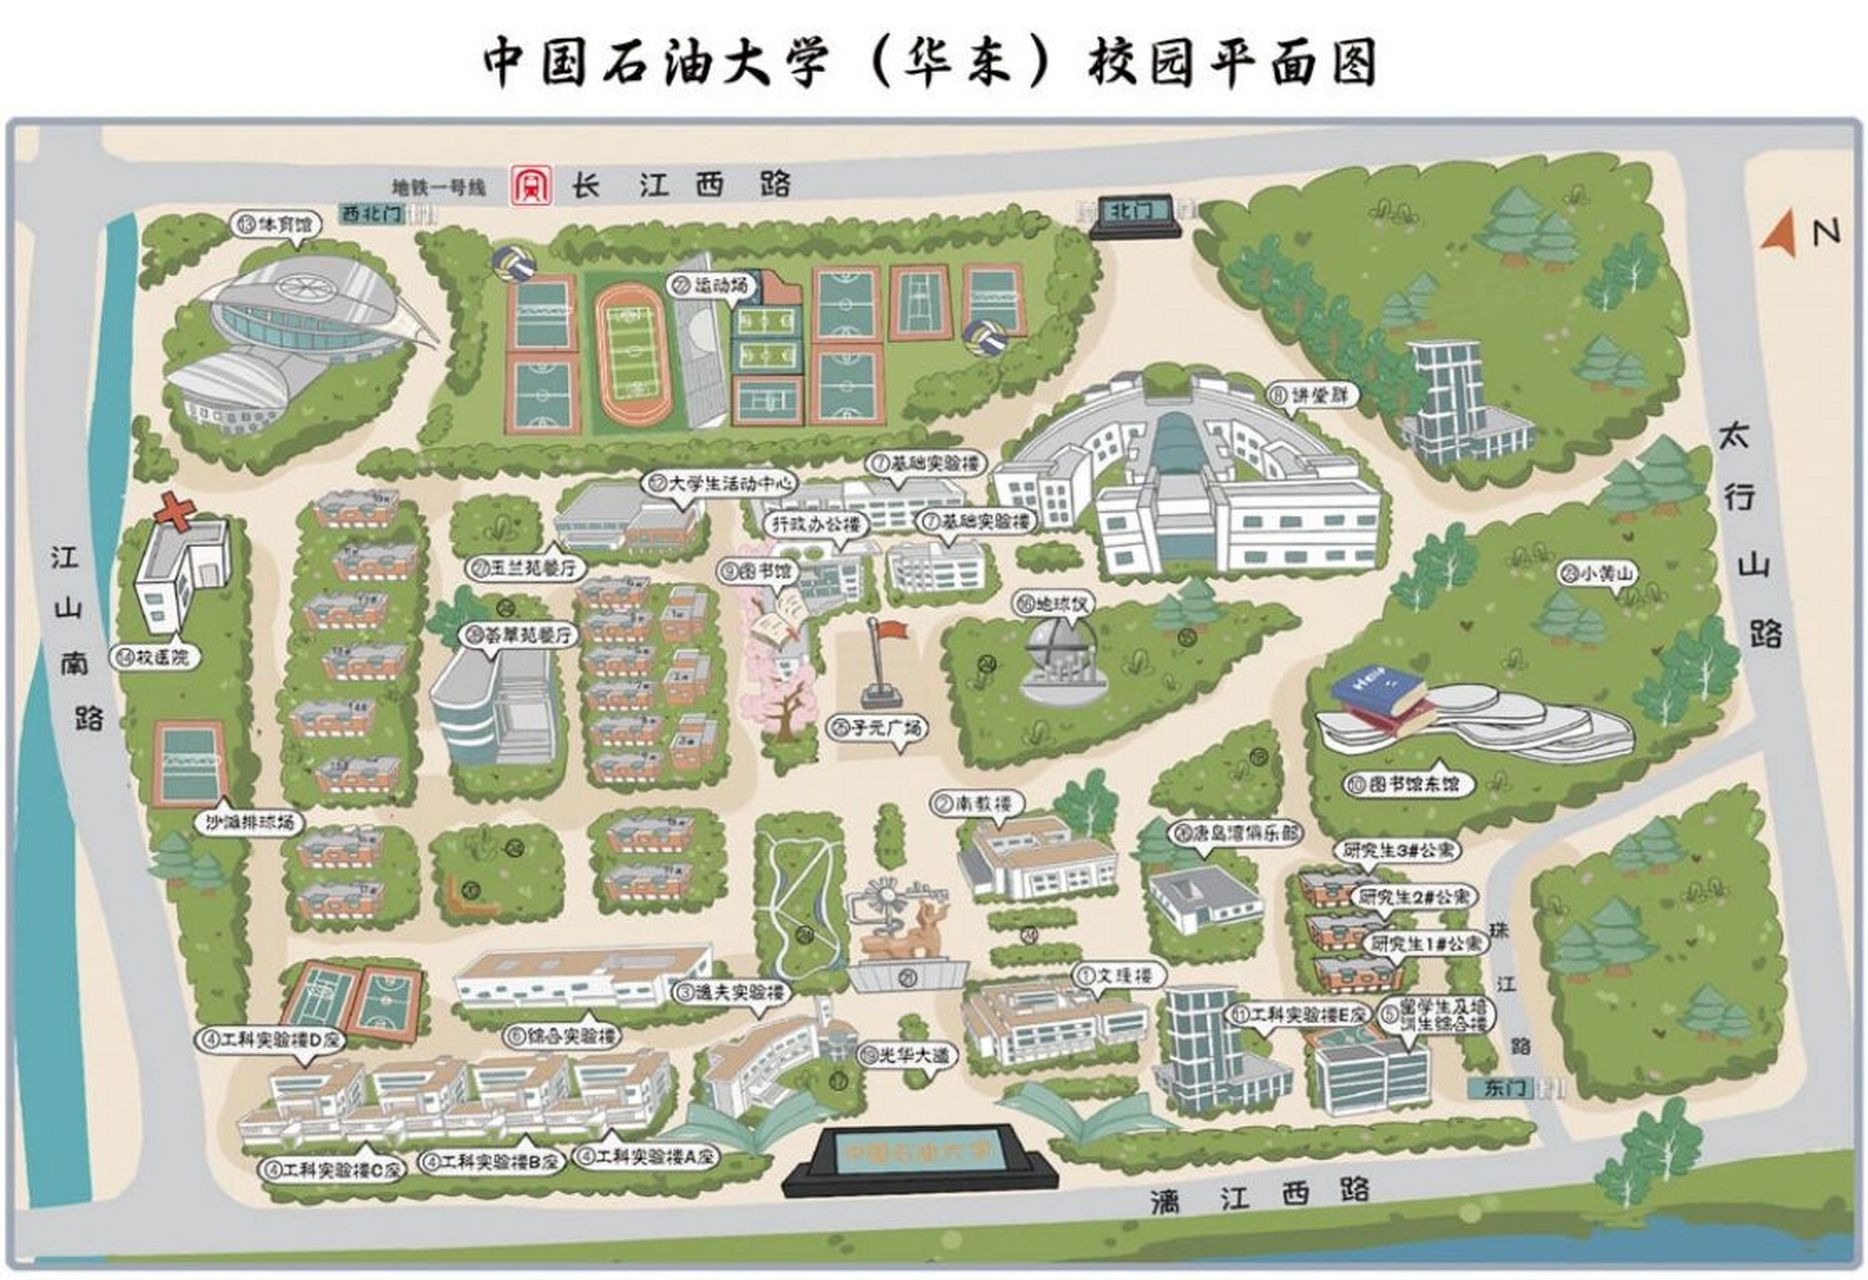 史上最完整的中国石油大学华东唐岛湾校区校园平面图新生宝宝们快来